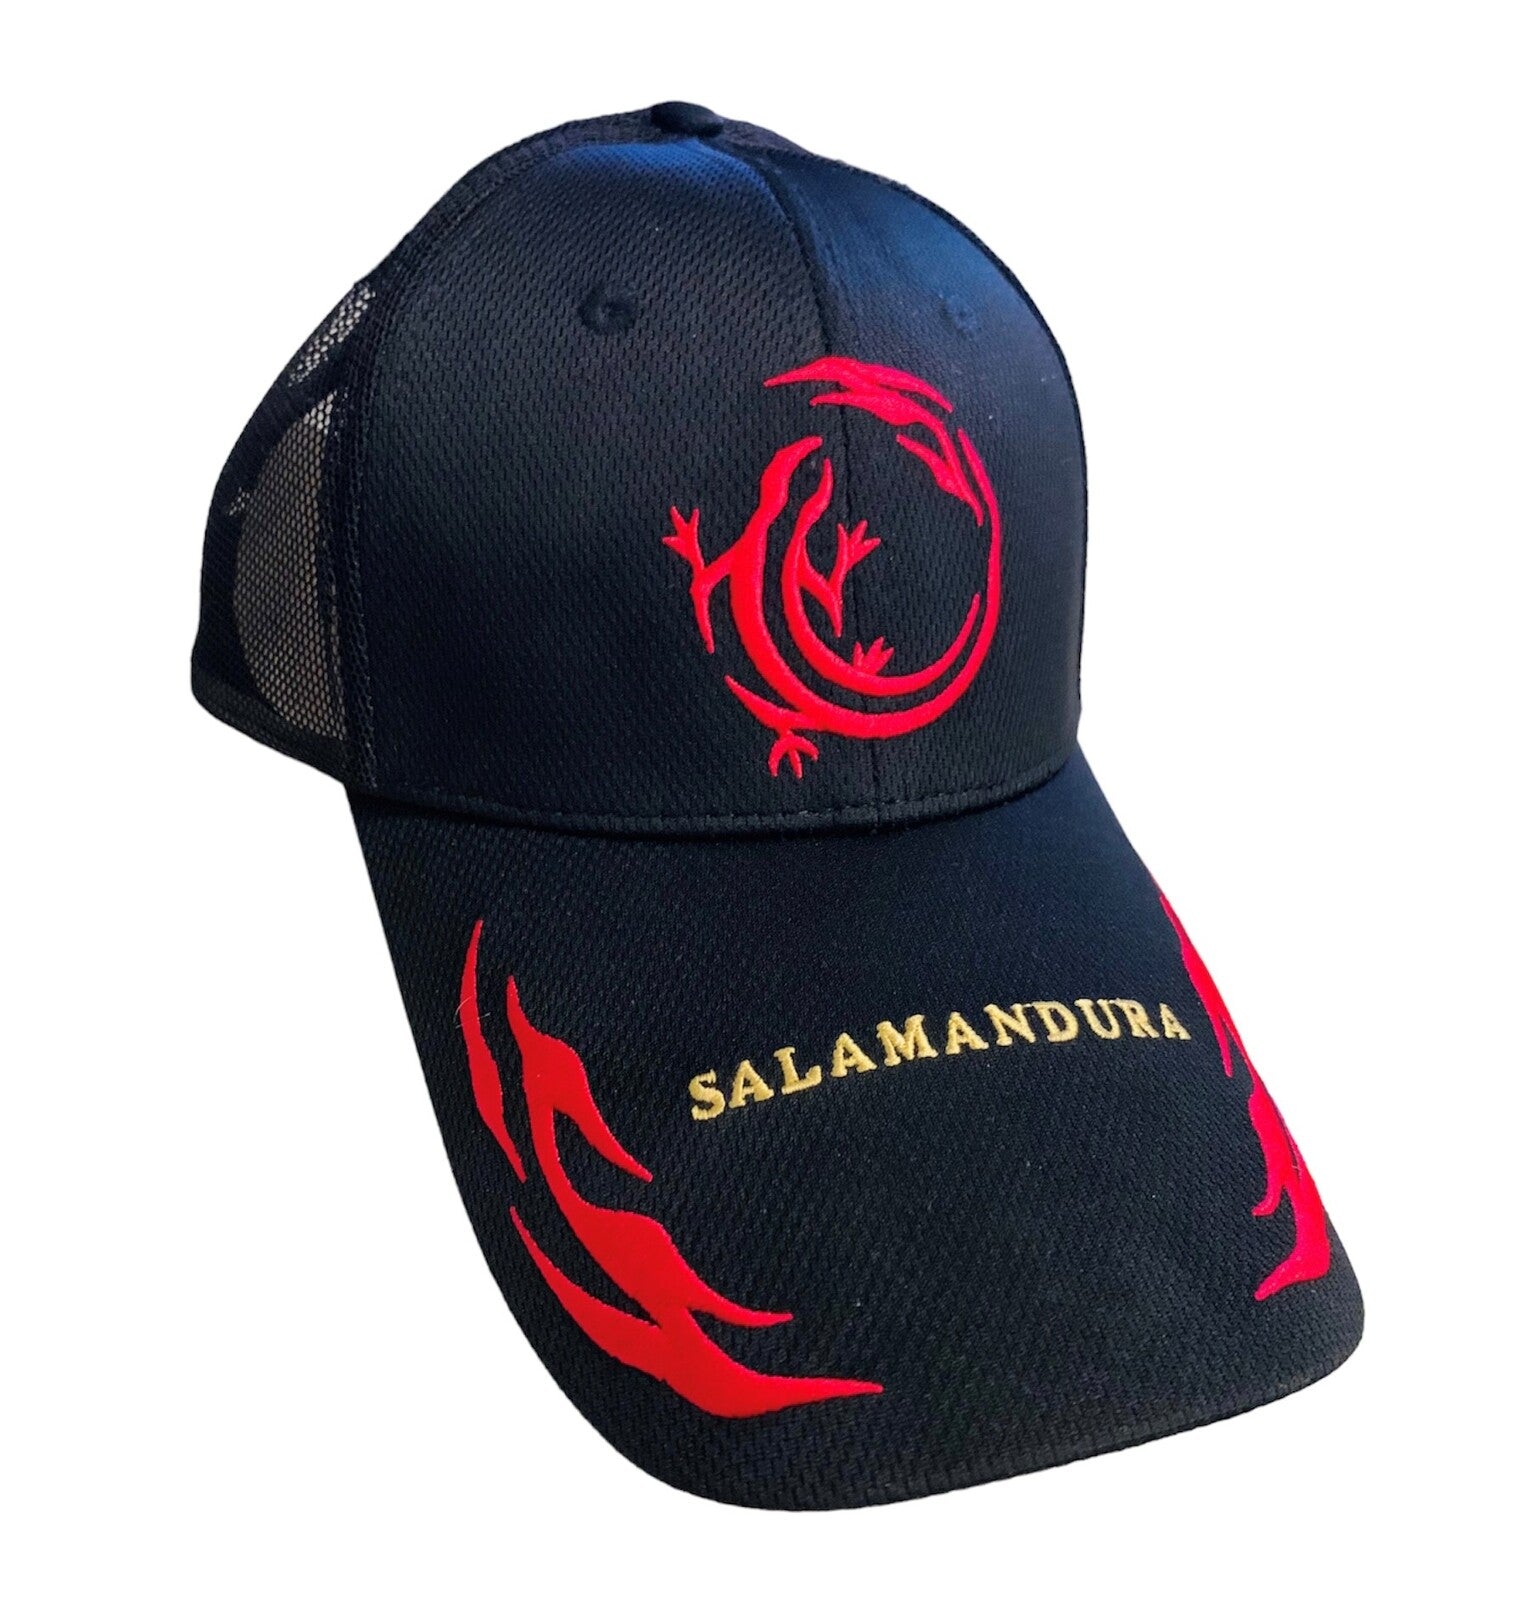 Daiwa Salamandura Black & Red Fishing Cap for Sale